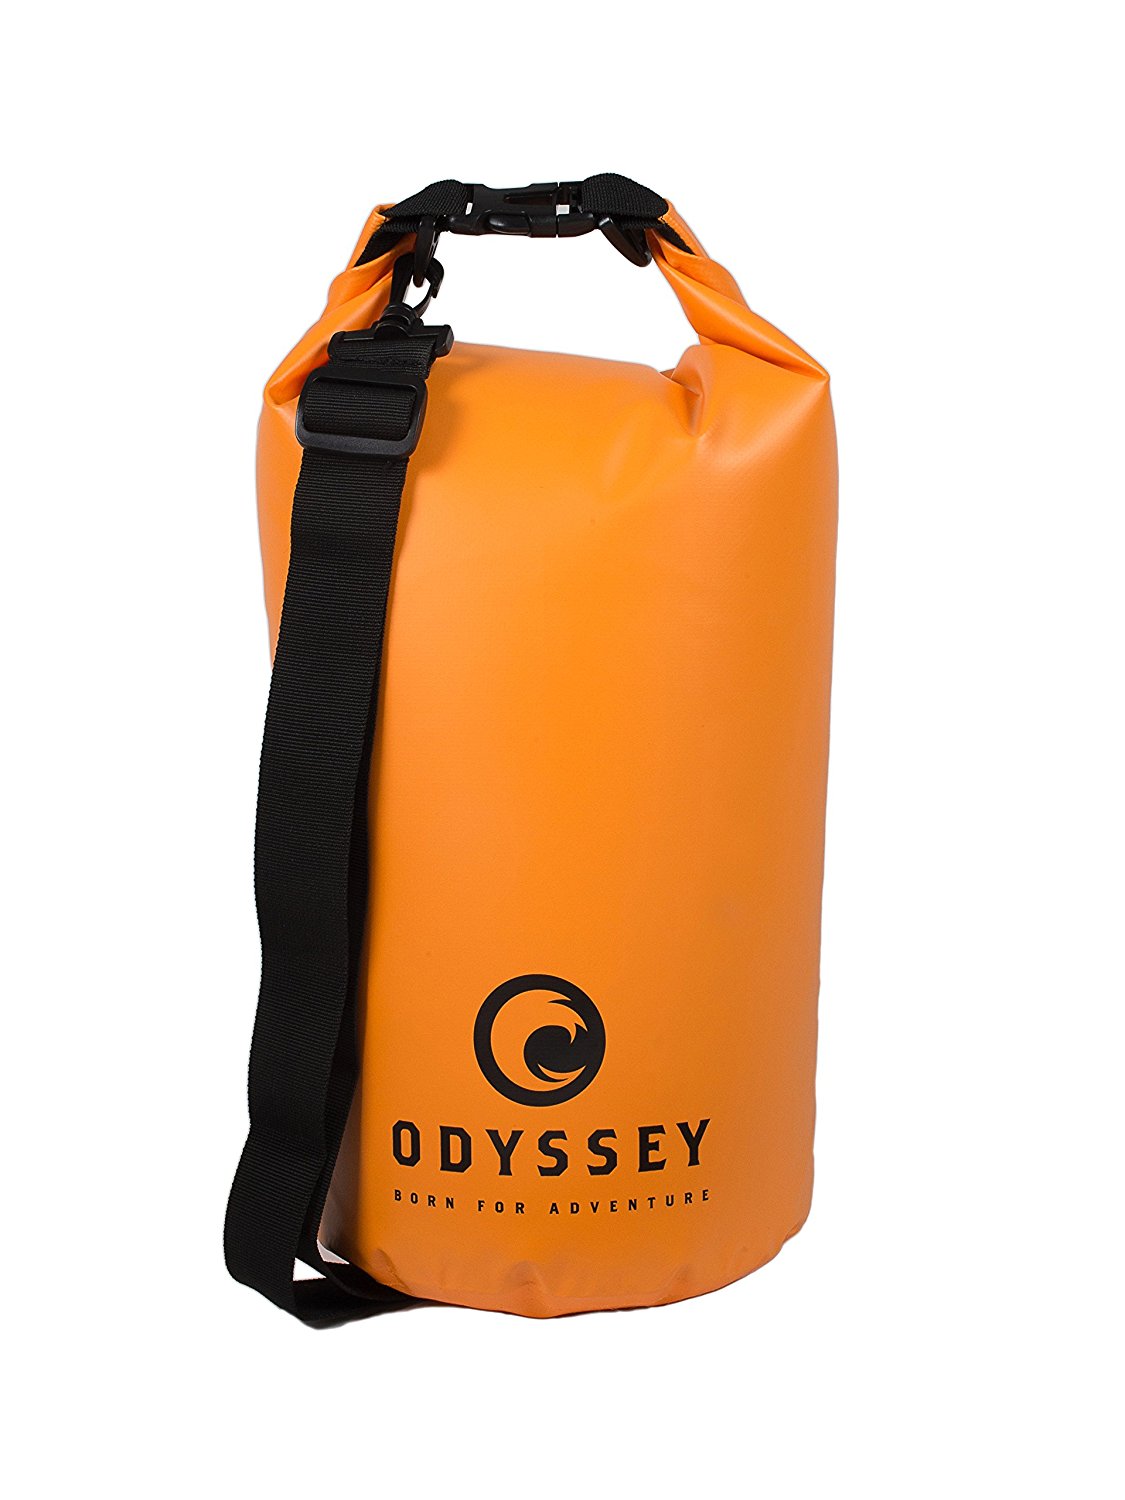 Odyssey Waterproof Dry Bag, waterproof camera bags, waterproof camera case, waterproof camera backpack